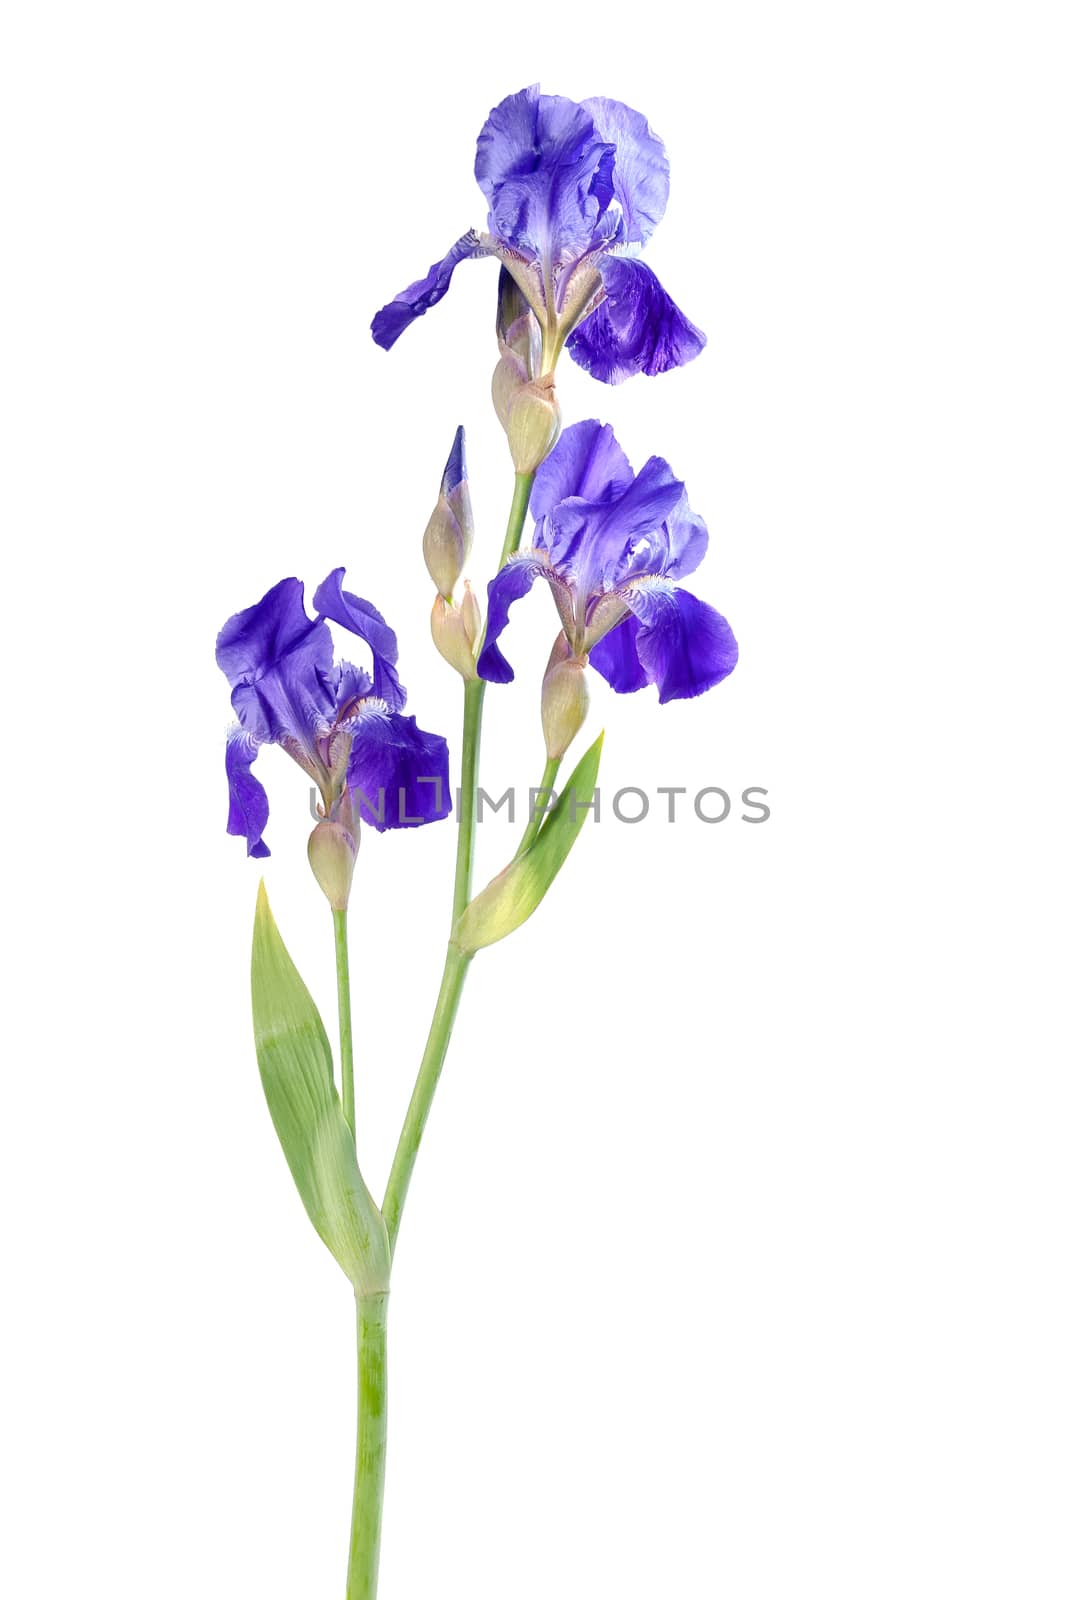 Iris flower 01 by firewings